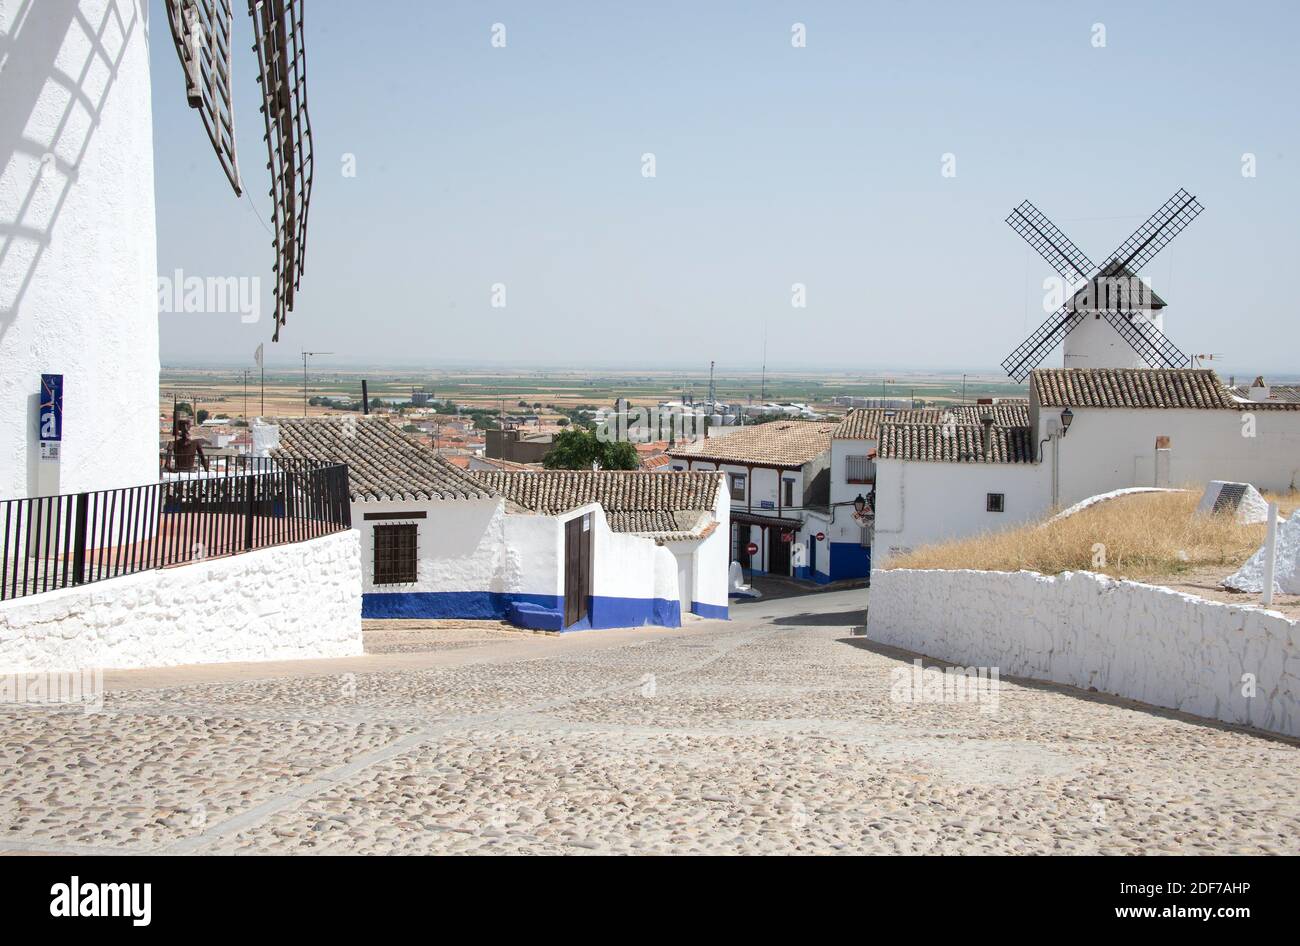 Campo de Criptana, Ciudad Real province, Castilla- La Mancha, Spain. Stock Photo